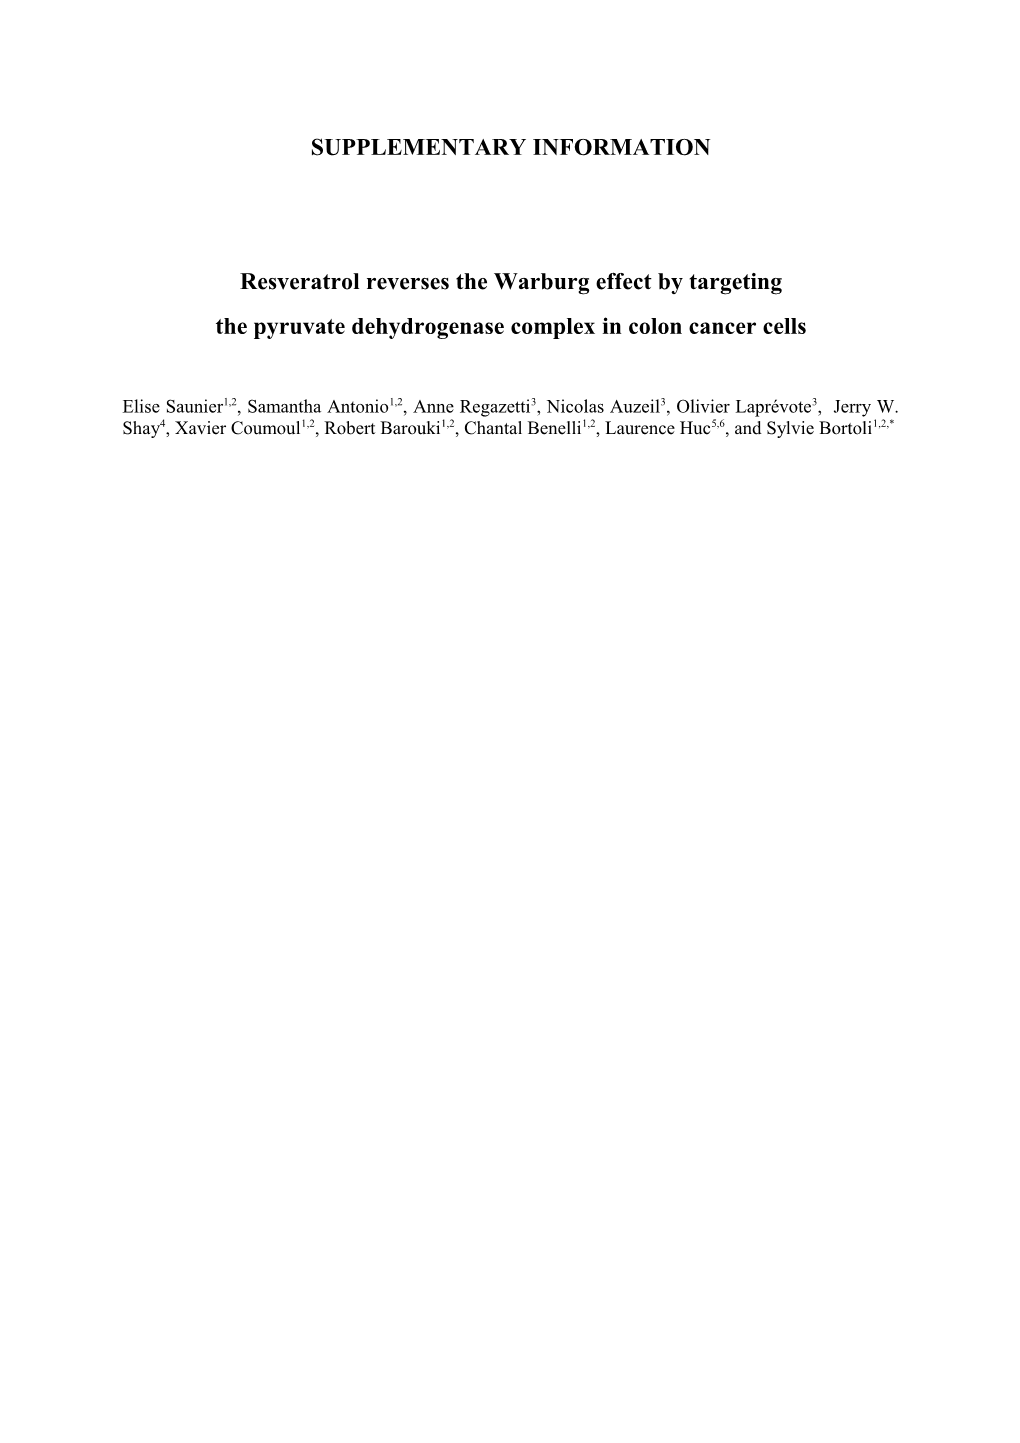 Resveratrol Reverses the Warburg Effect by Targeting